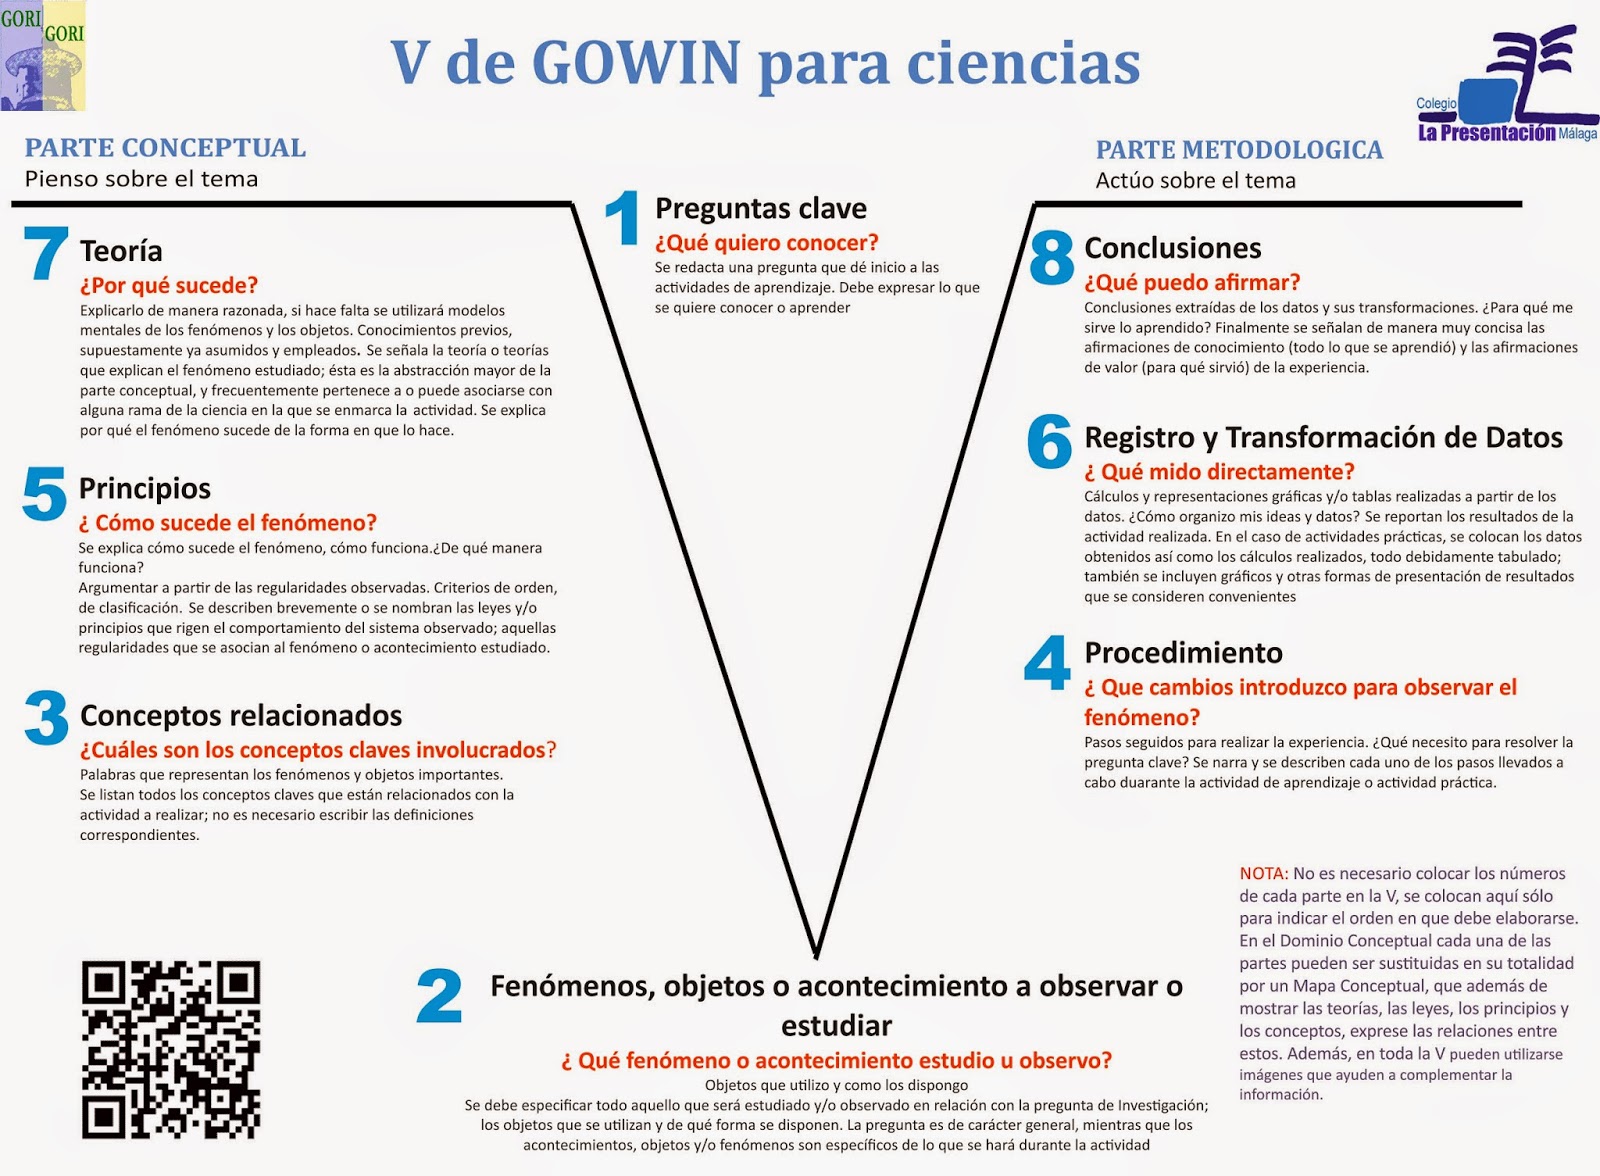 Portfolio Docente: V de Gowin como instrumento de Evaluación